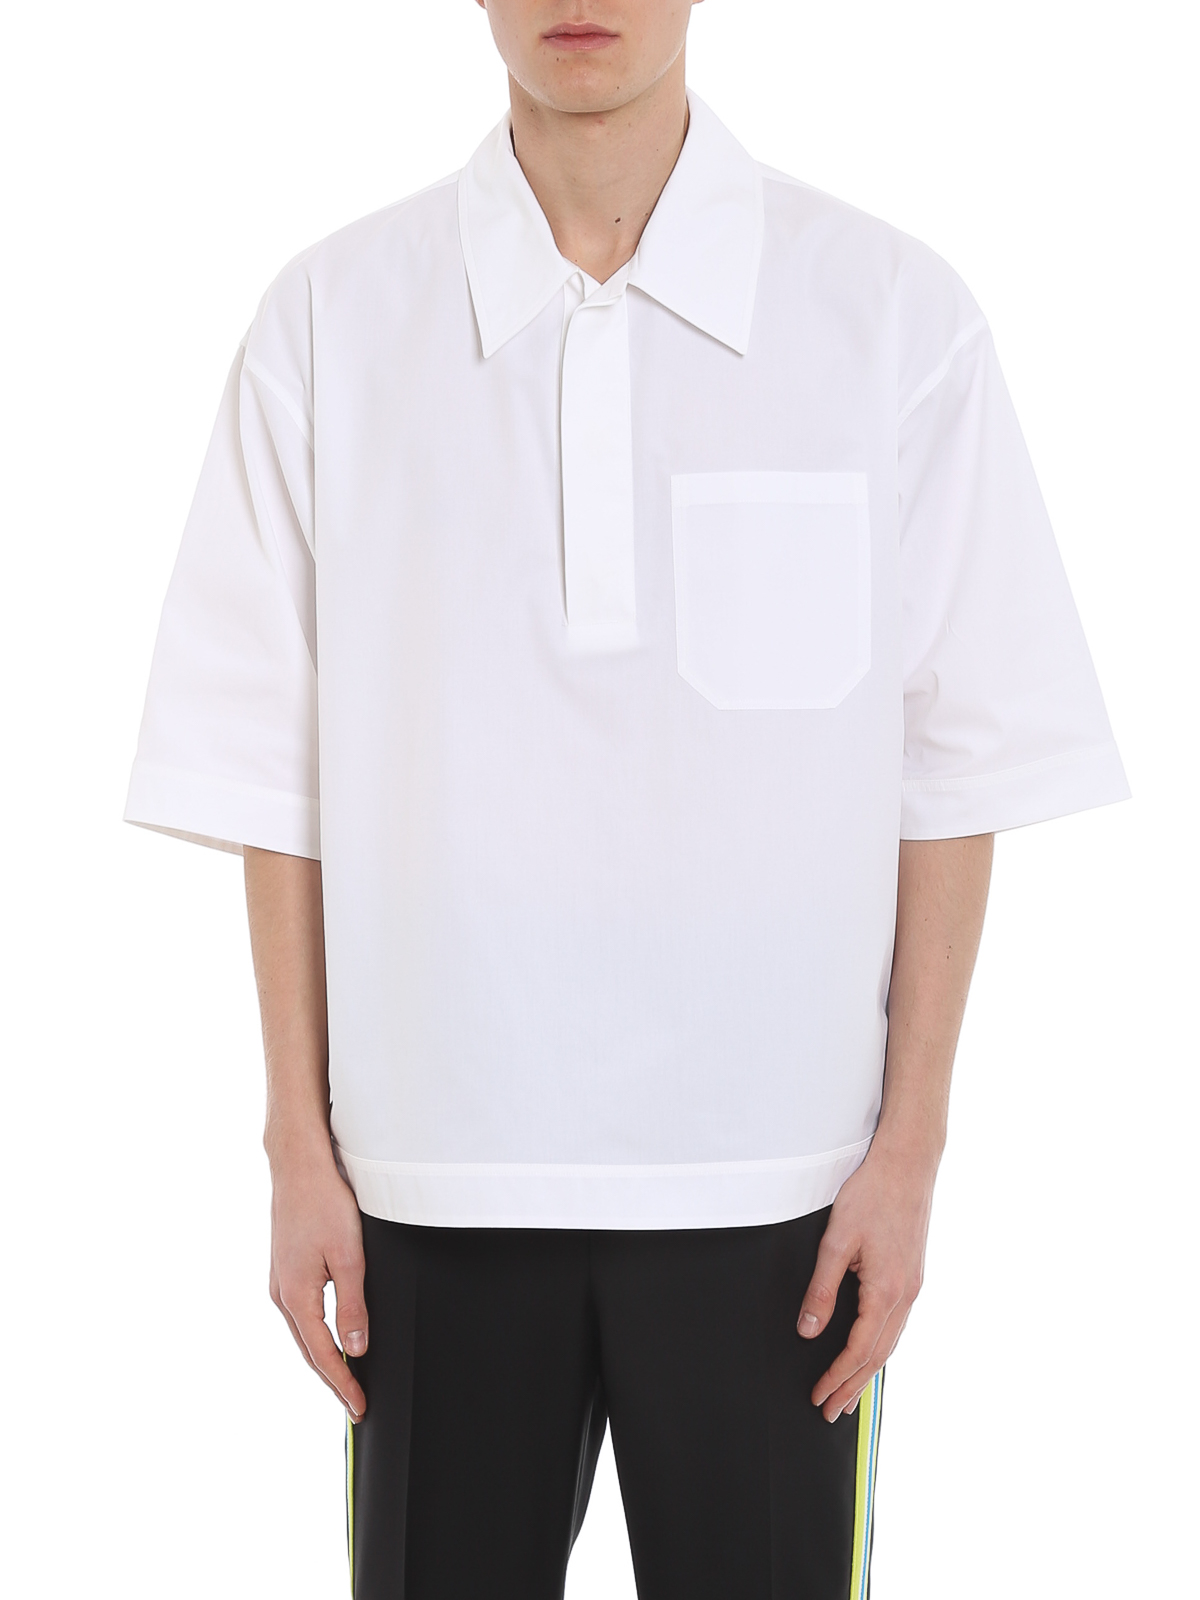 ヴァレンティノ メンズ ポロシャツ トップス Polo shirt White 通販